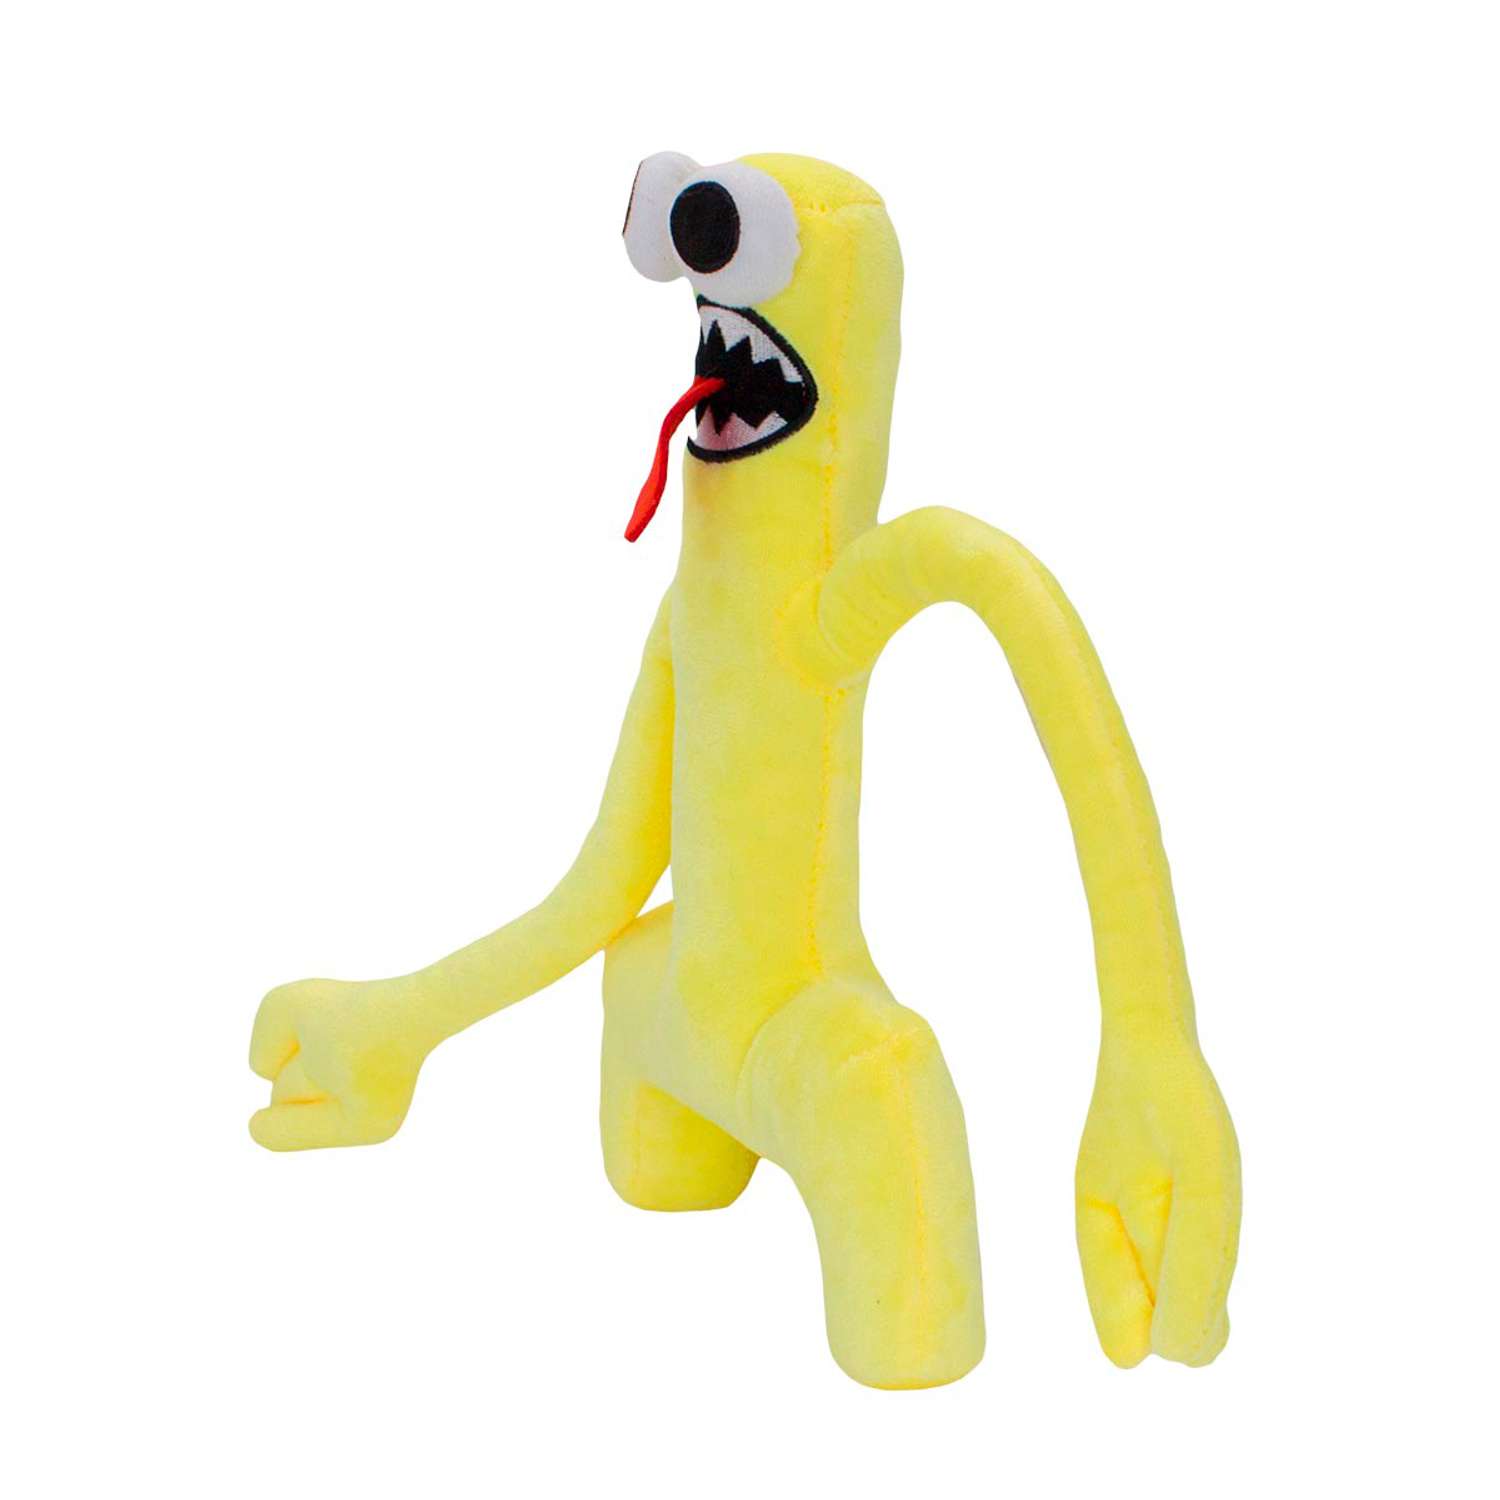 Мягкая игрушка Михи-Михи радужные друзья Грин желтый 28см - фото 3